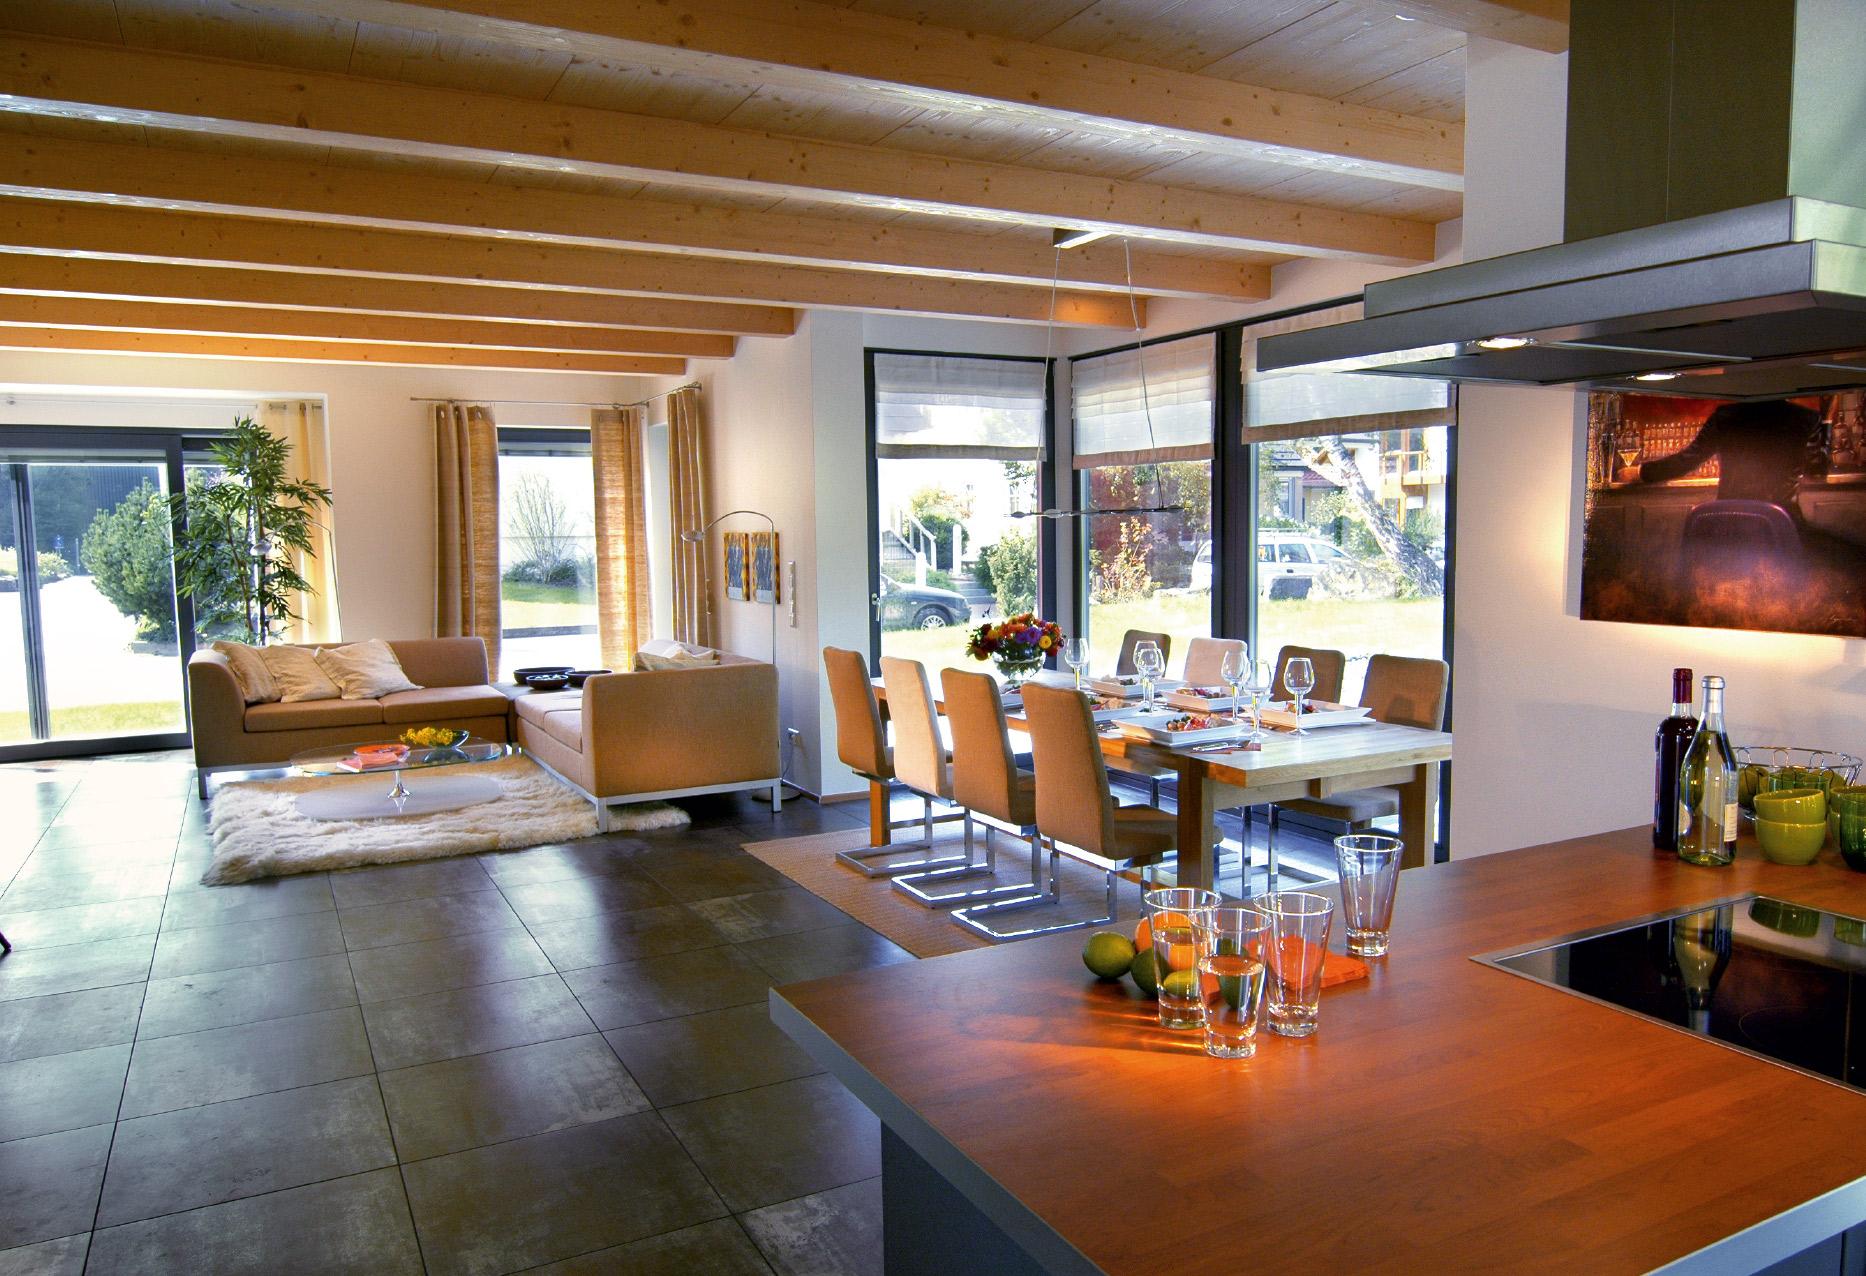 Gran sala de estar, comedor y cocina con techo de madera